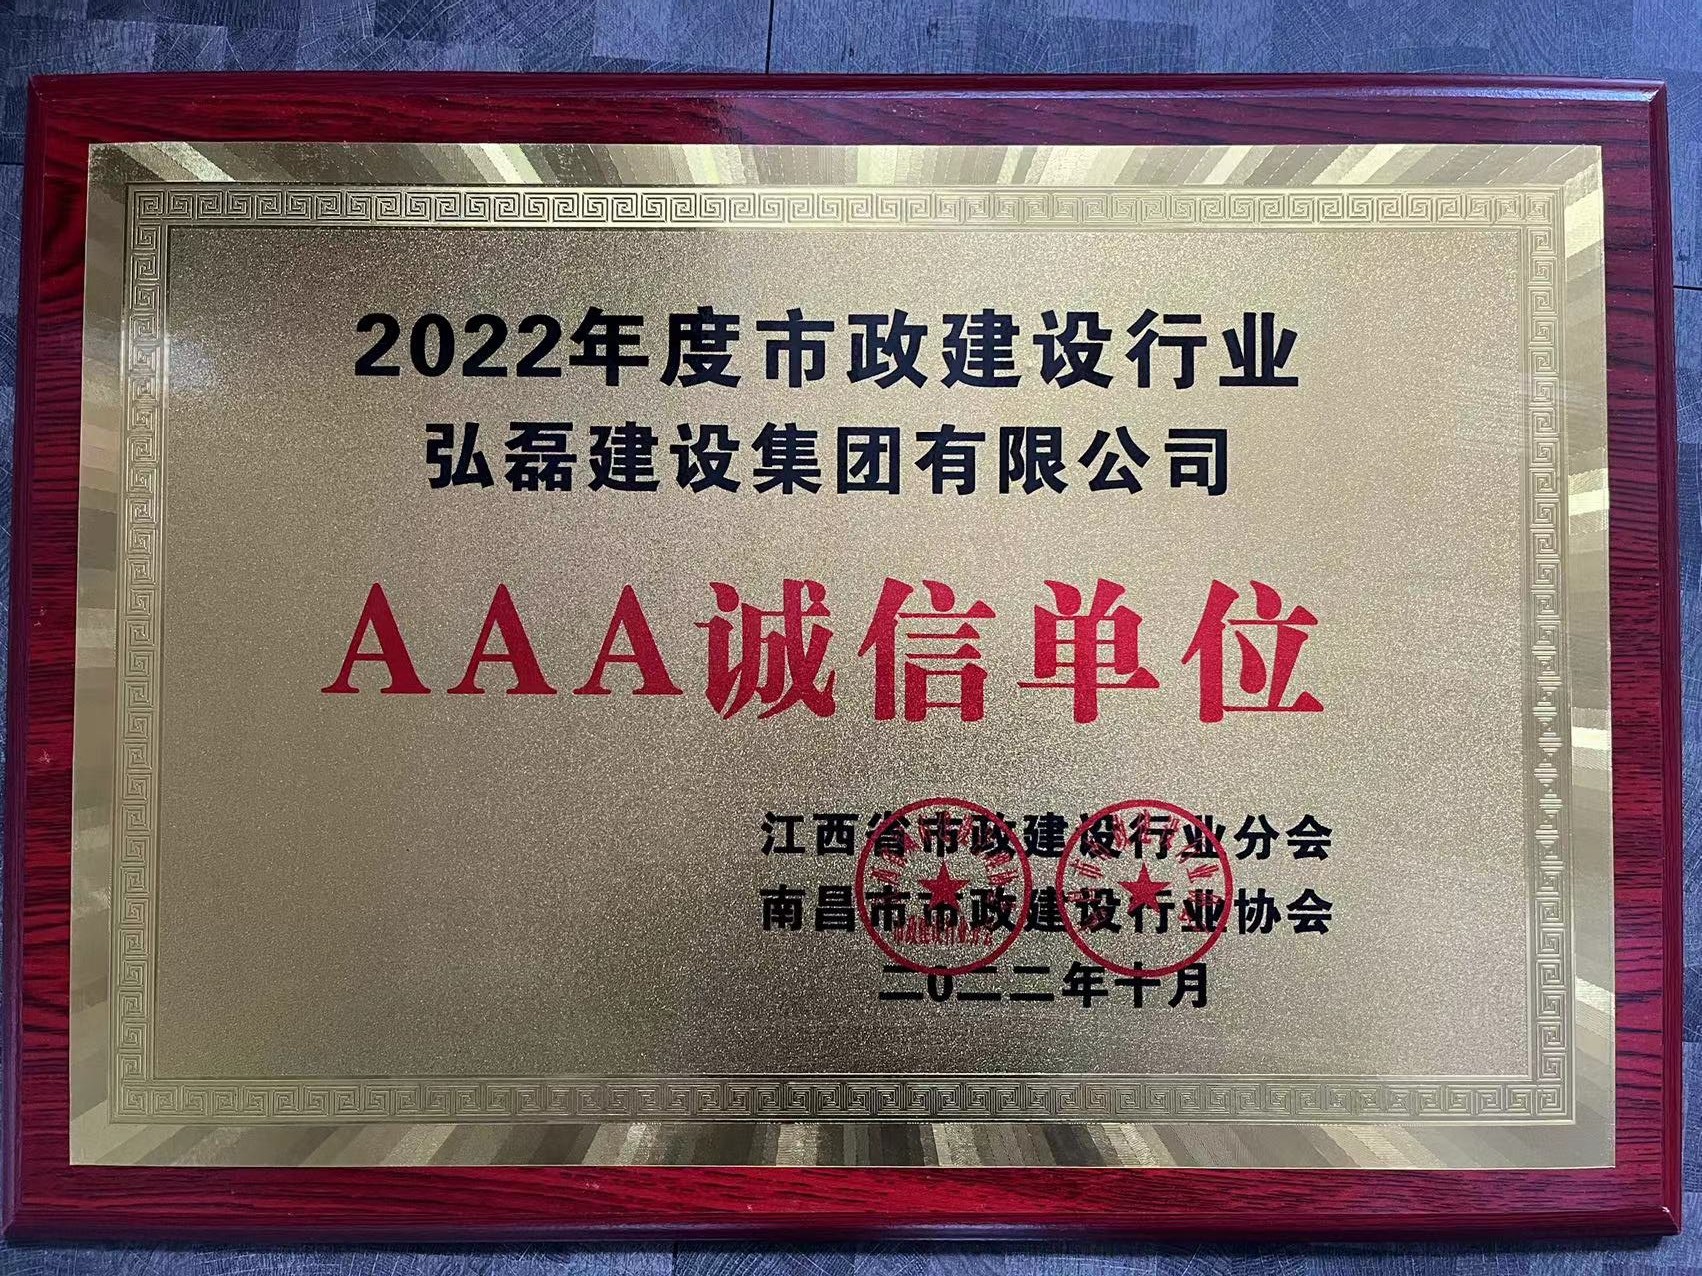 2022年度市政行業誠信AAA.